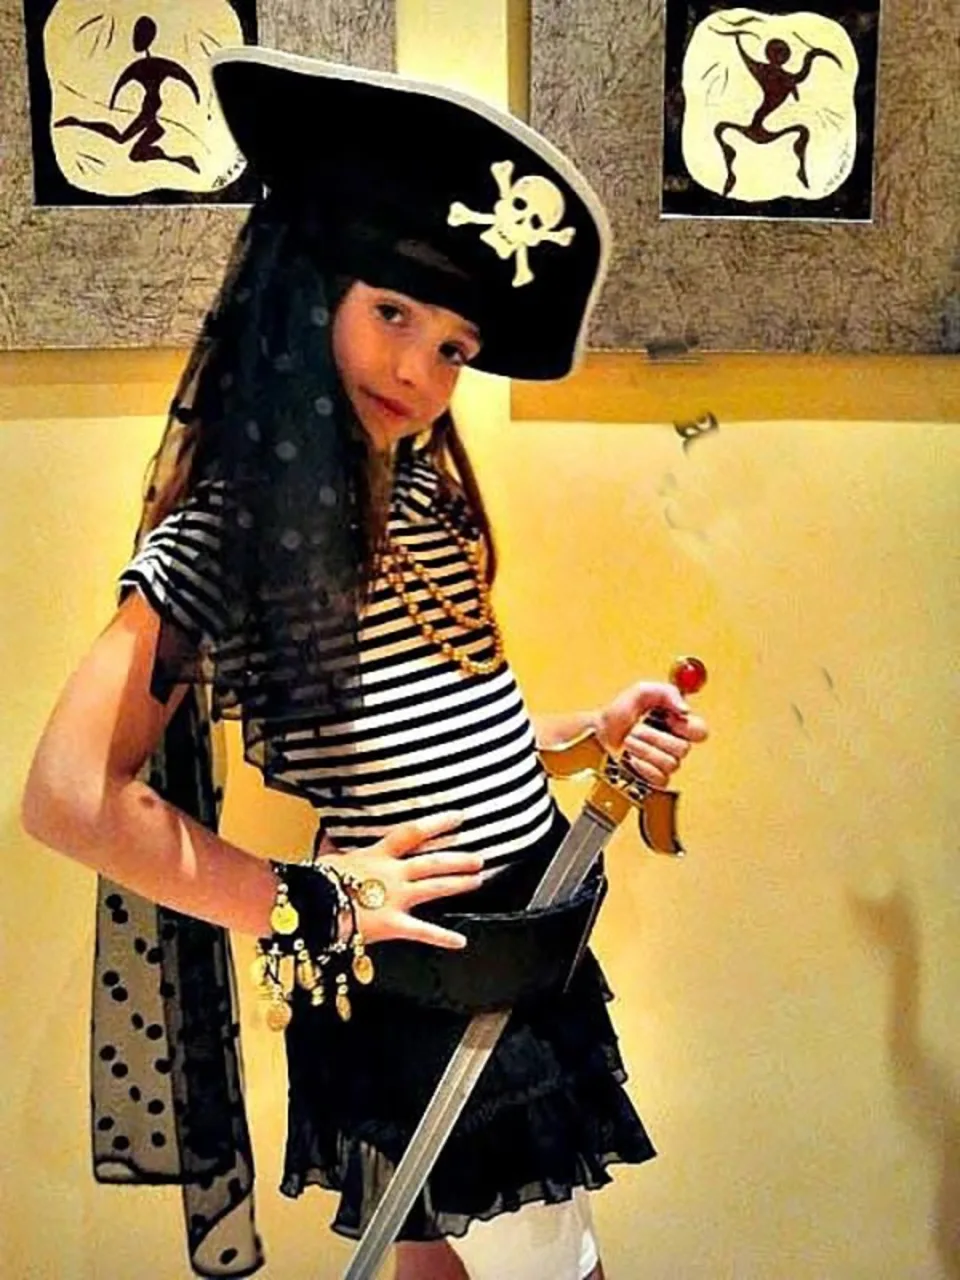 Пиратская вечеринка костюмы